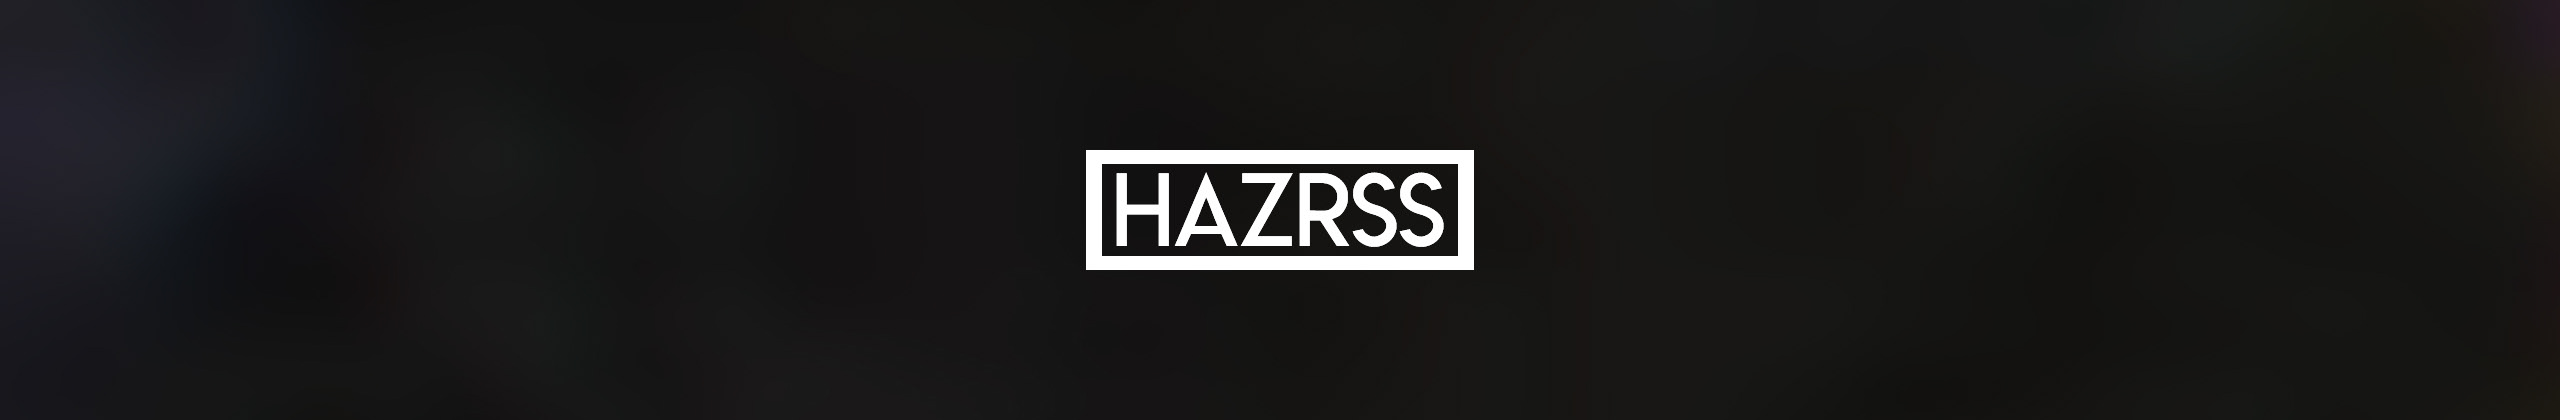 H A Z R S's profile banner